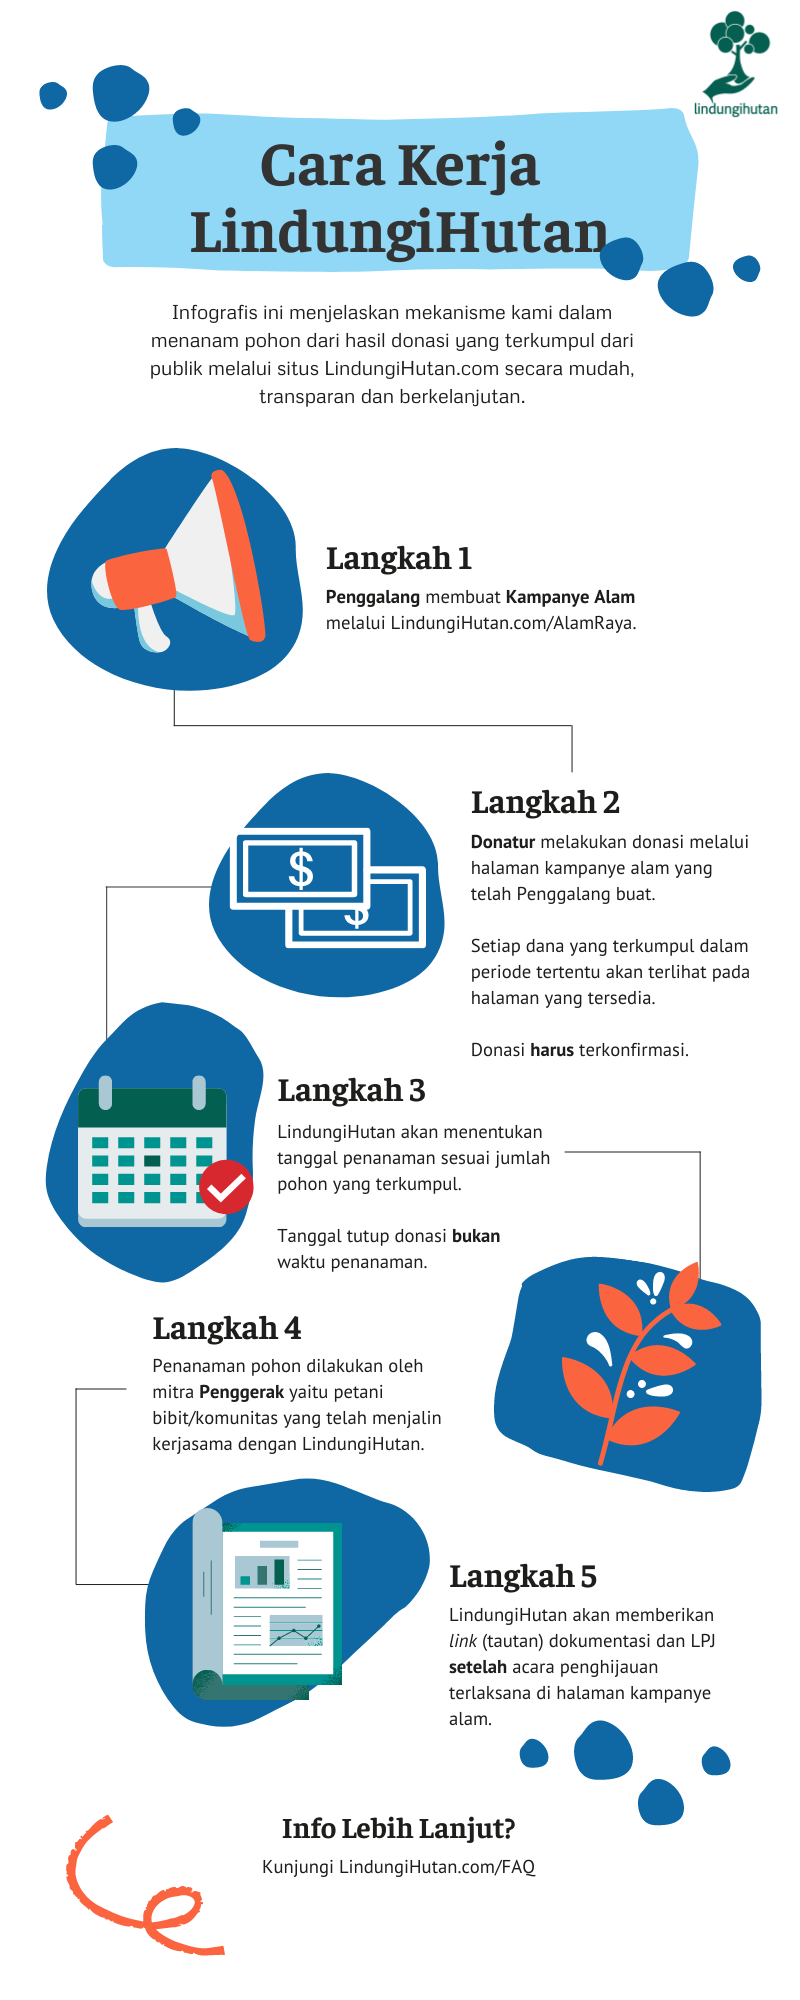 Infografis terkait mekanisme donasi dan penggalangan dana di LindungiHutan